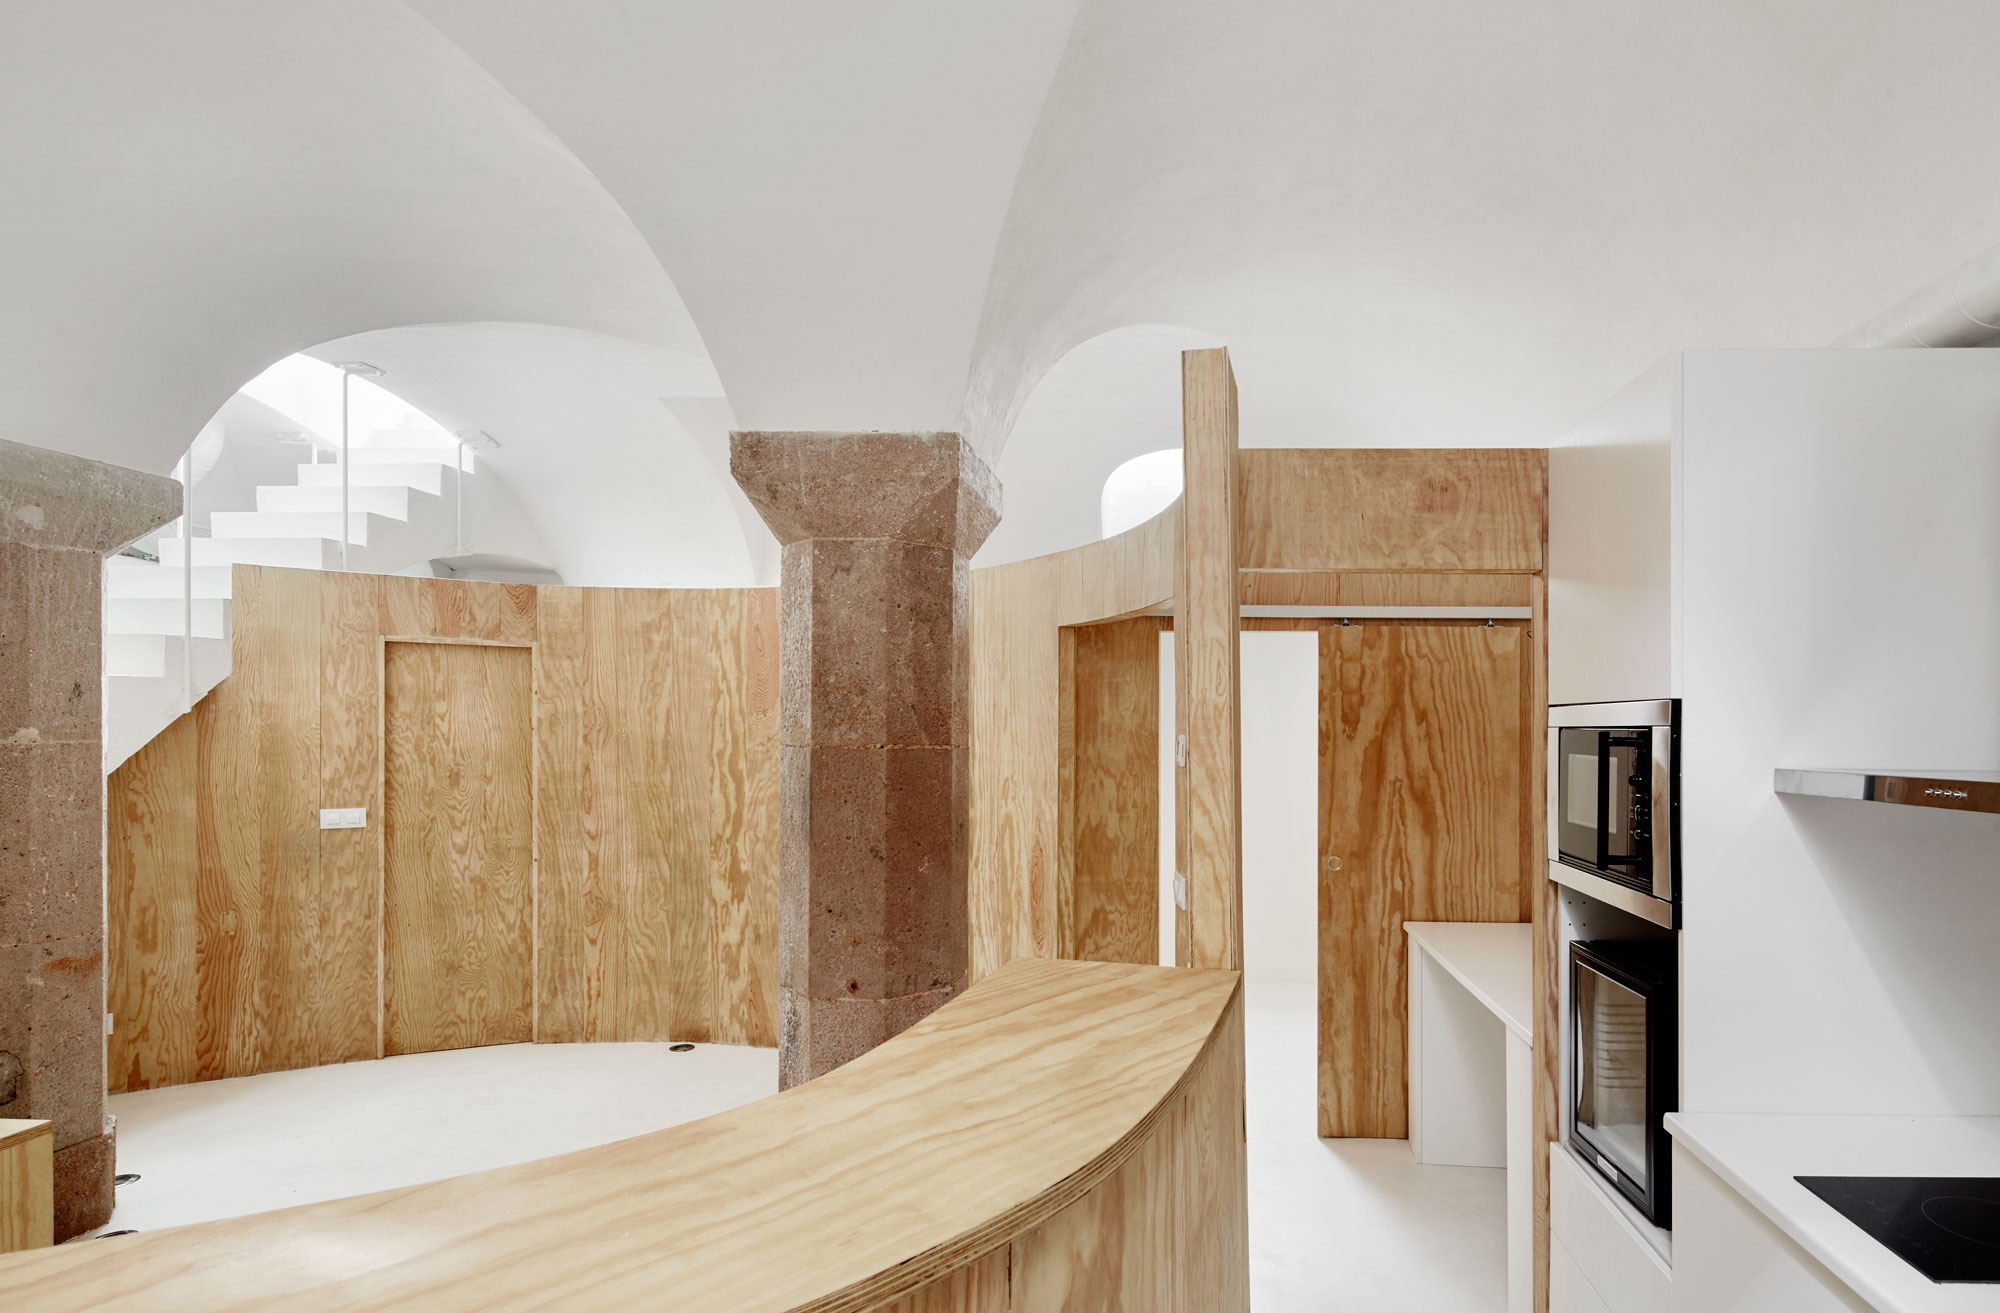 Un hermoso espacio subterrano por Raul Sanchez Architects